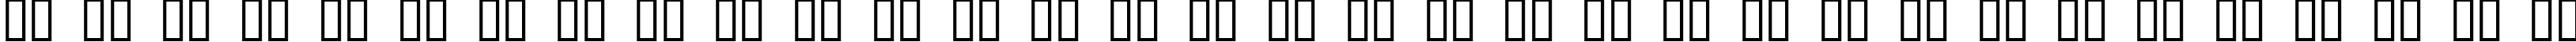 Пример написания русского алфавита шрифтом Xmas Clipart